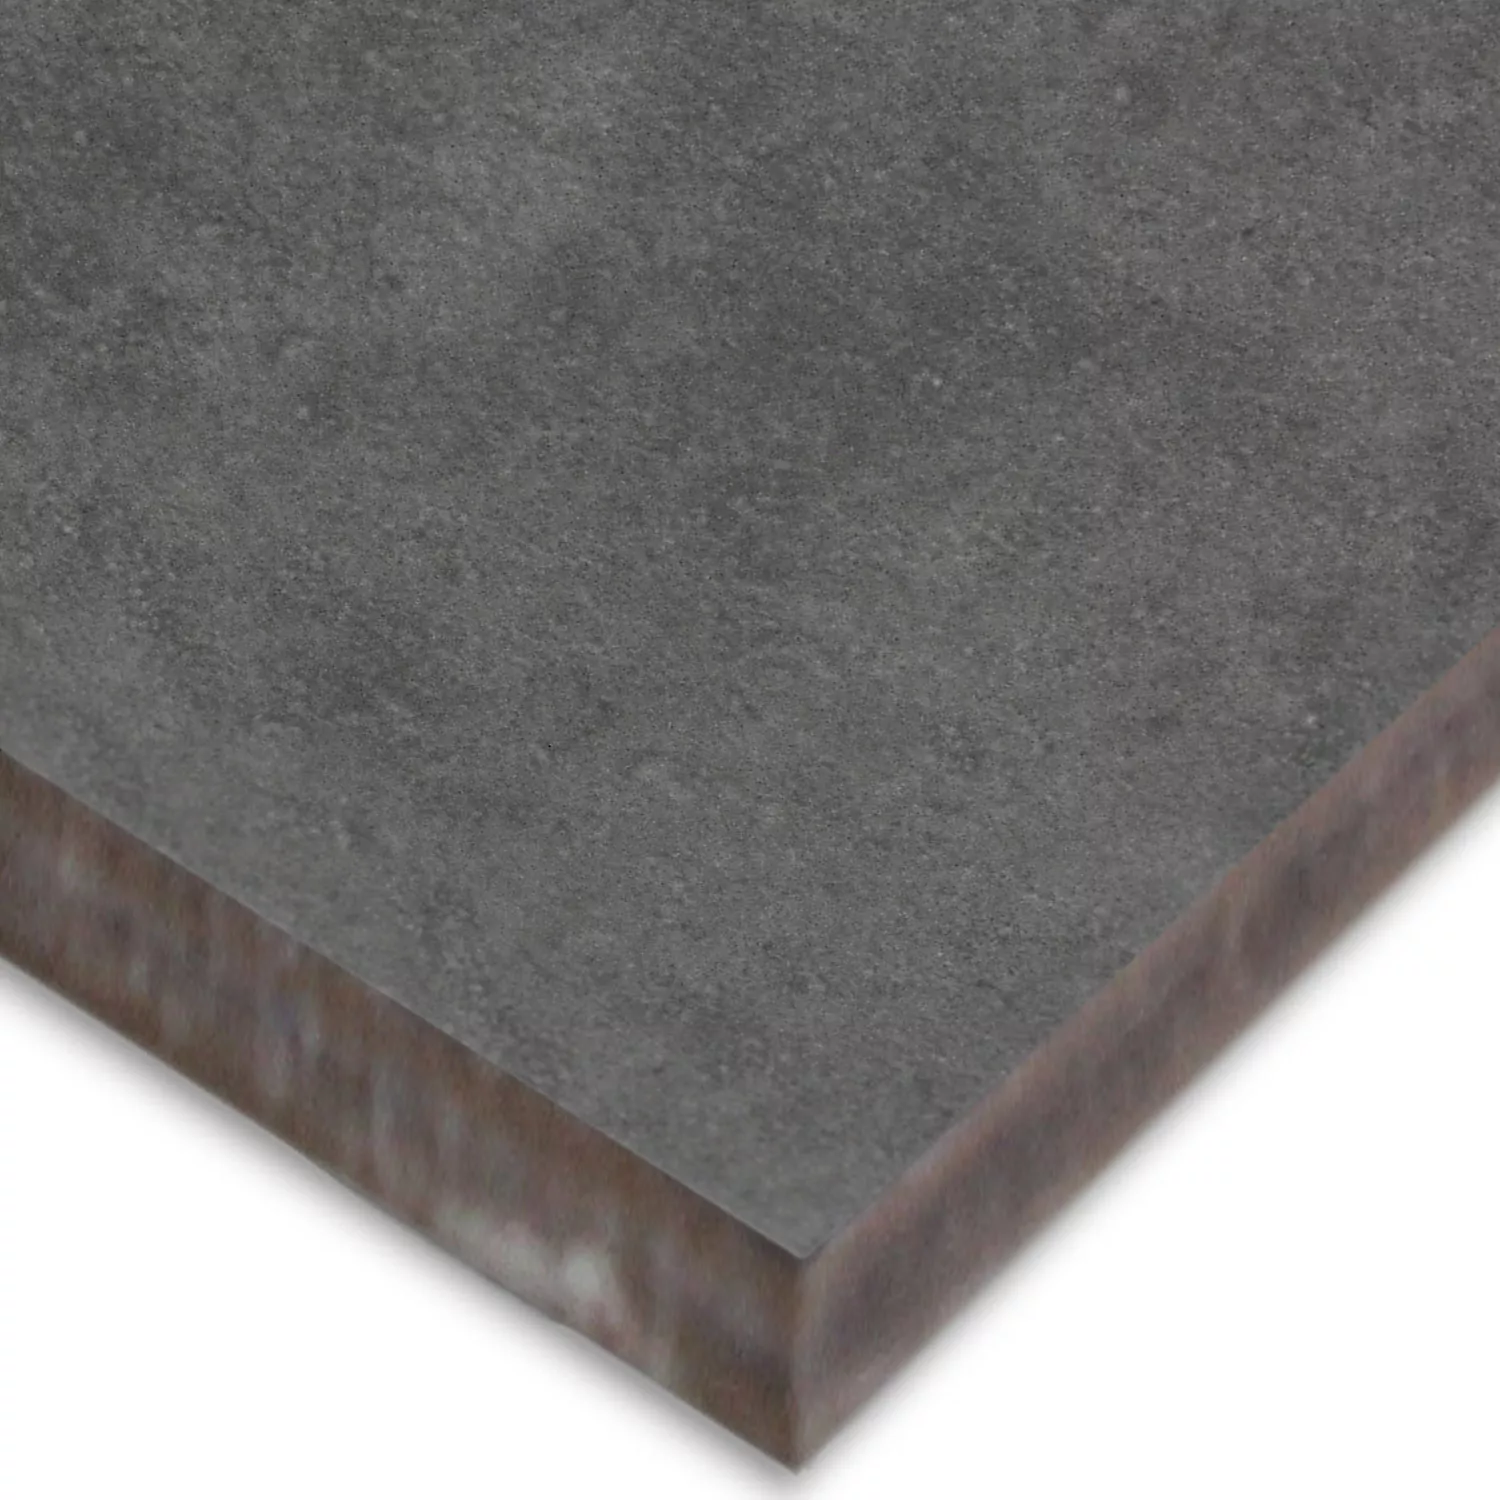 Aspect Tiglă De Ciment Gotik Tiglă De Bază Gri Inchis 22,3x22,3cm